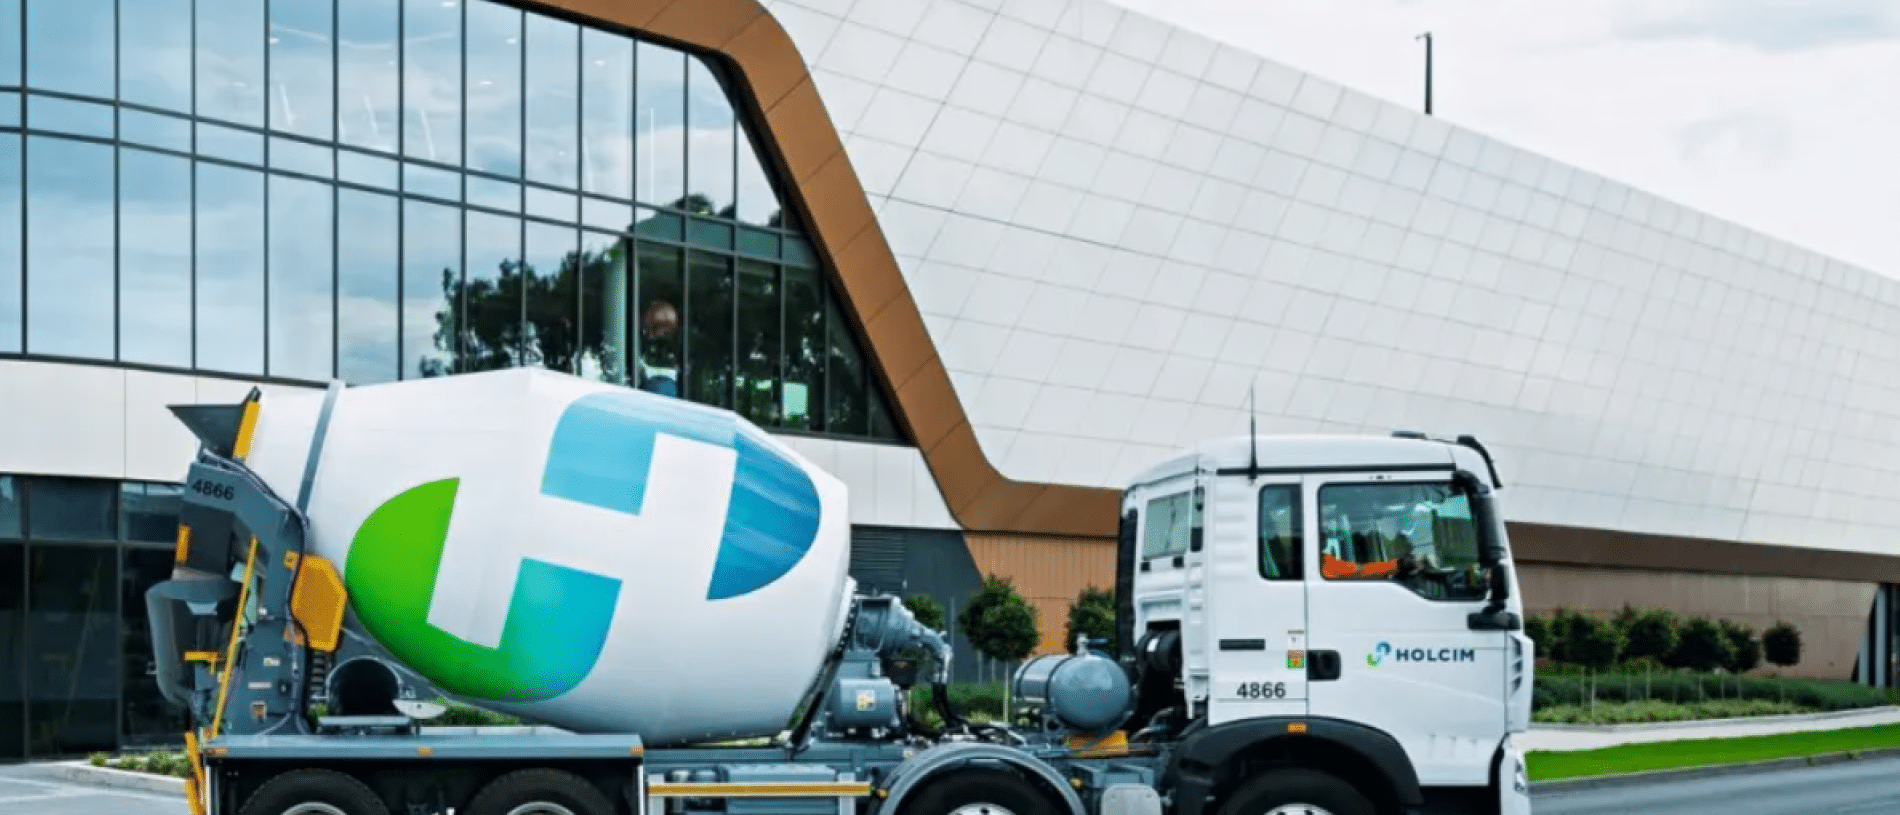 El fabricante alemán Holcim Solutions despedirá al 60% de su plantilla de Barcelona